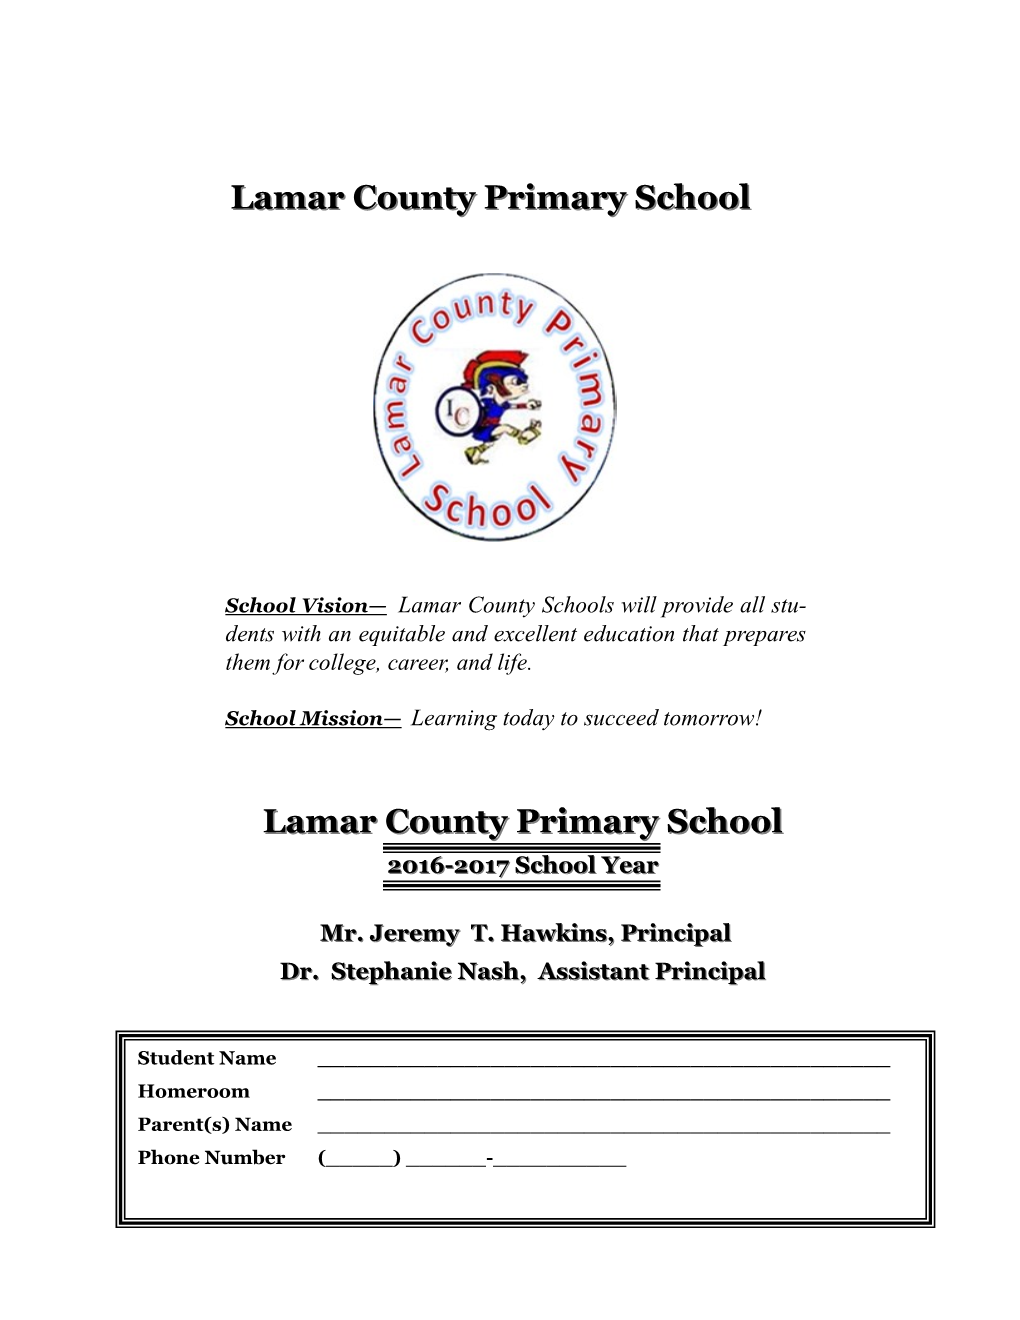 Lamar County Primary School Lamar County Primary School